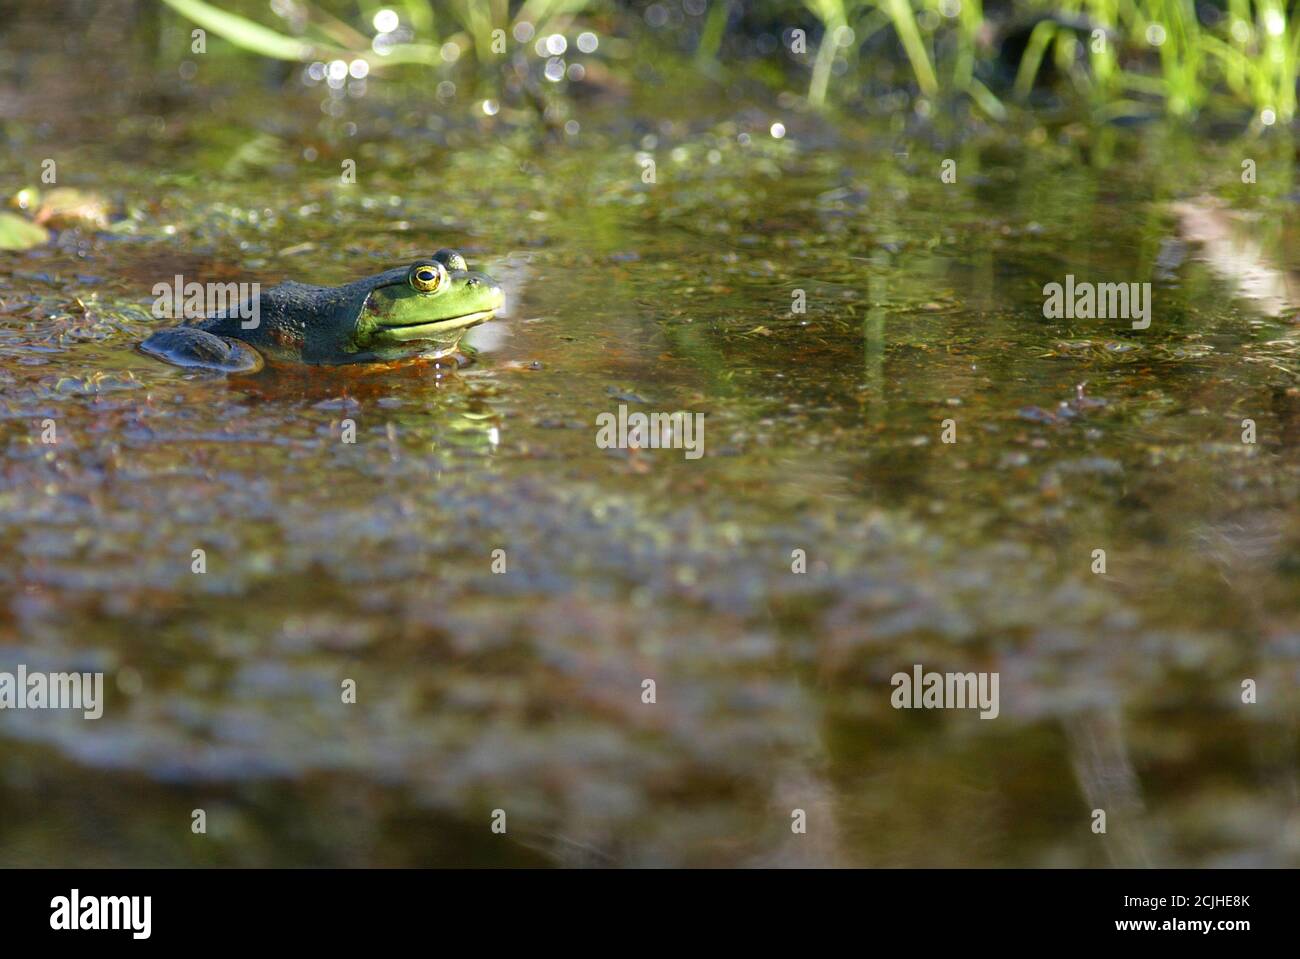 Bullfrog in its natural environment. Stock Photo